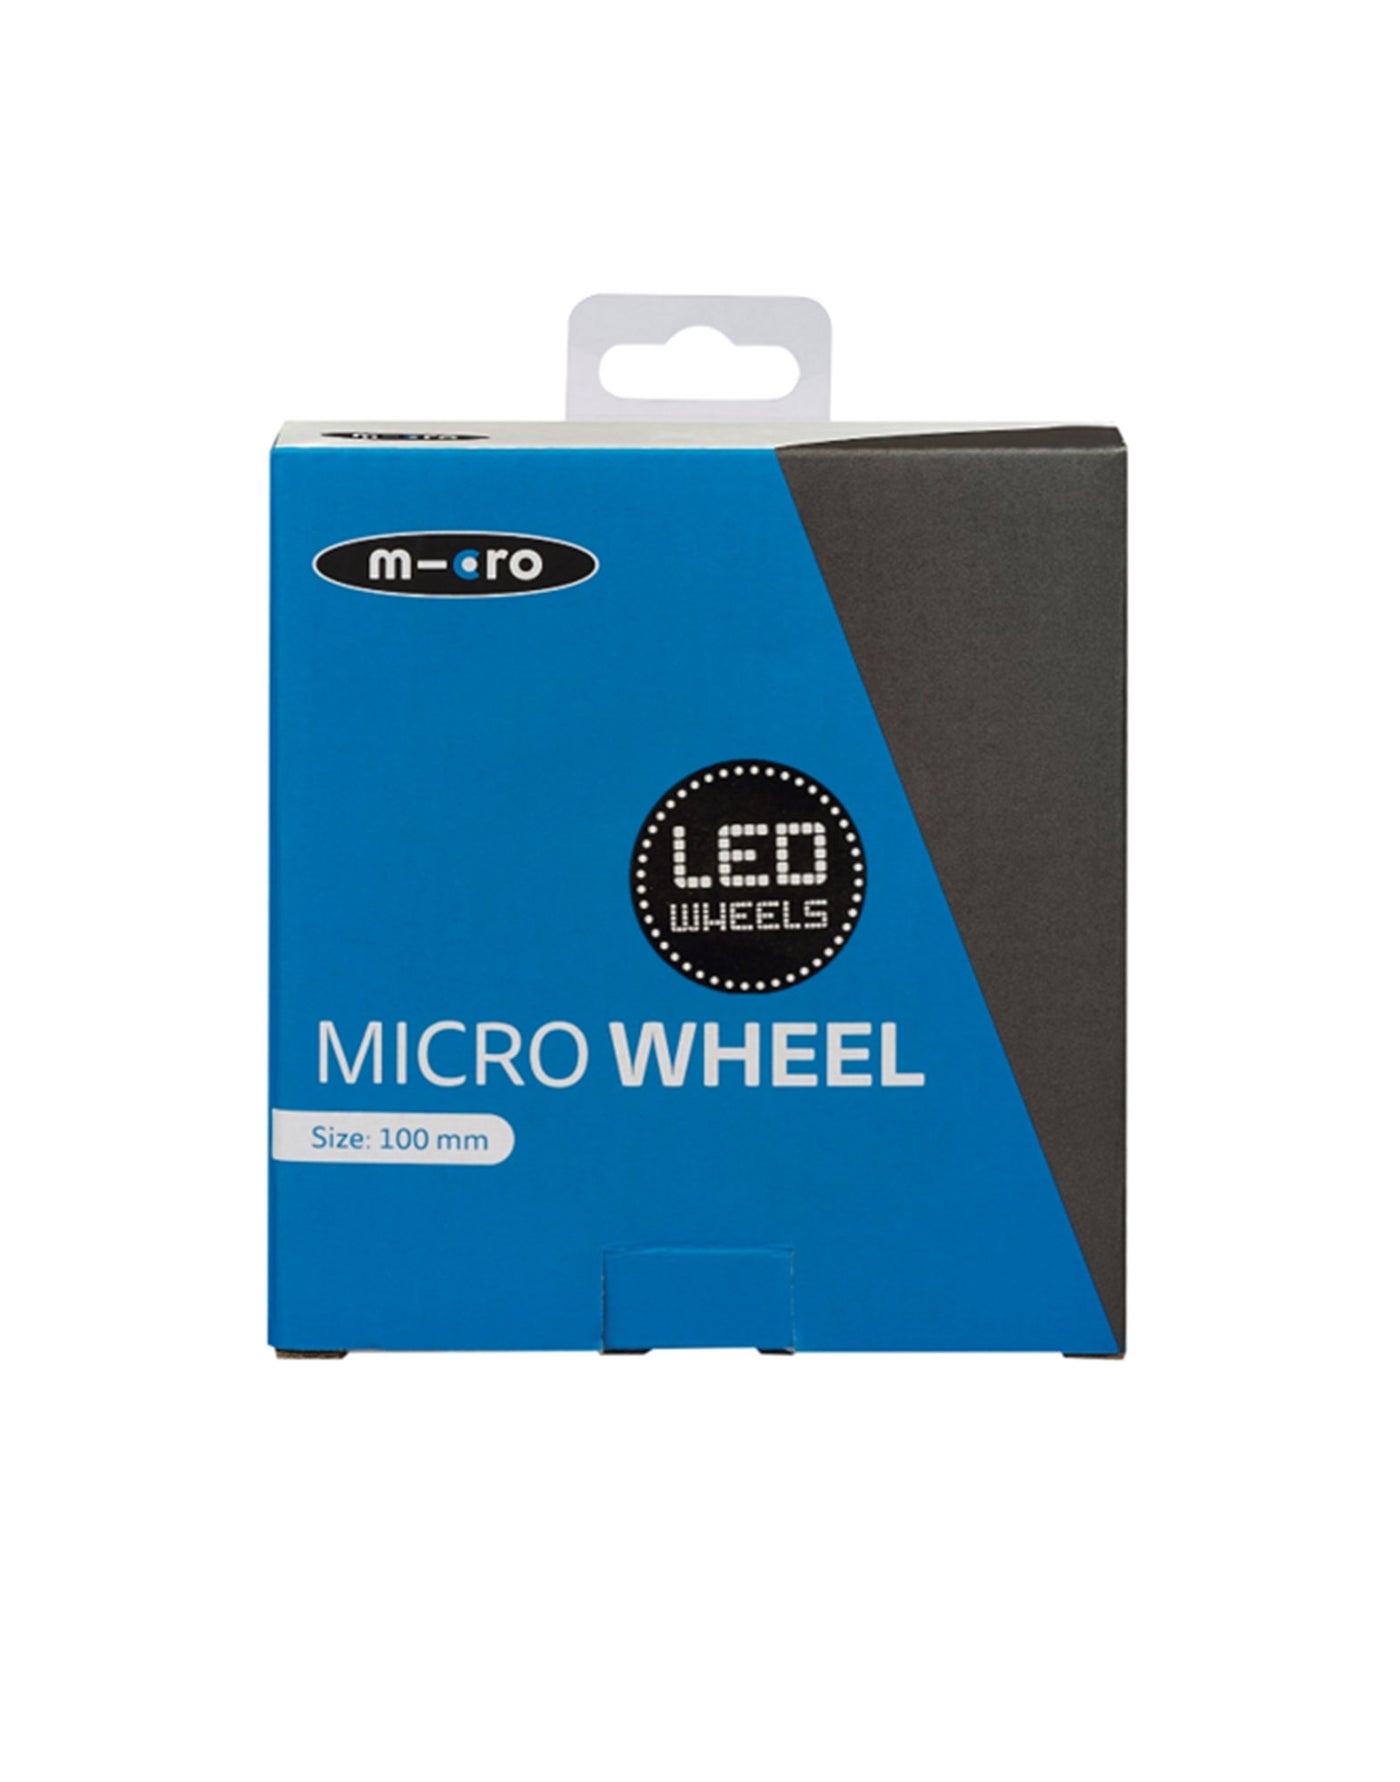 100mm led wheel packaging